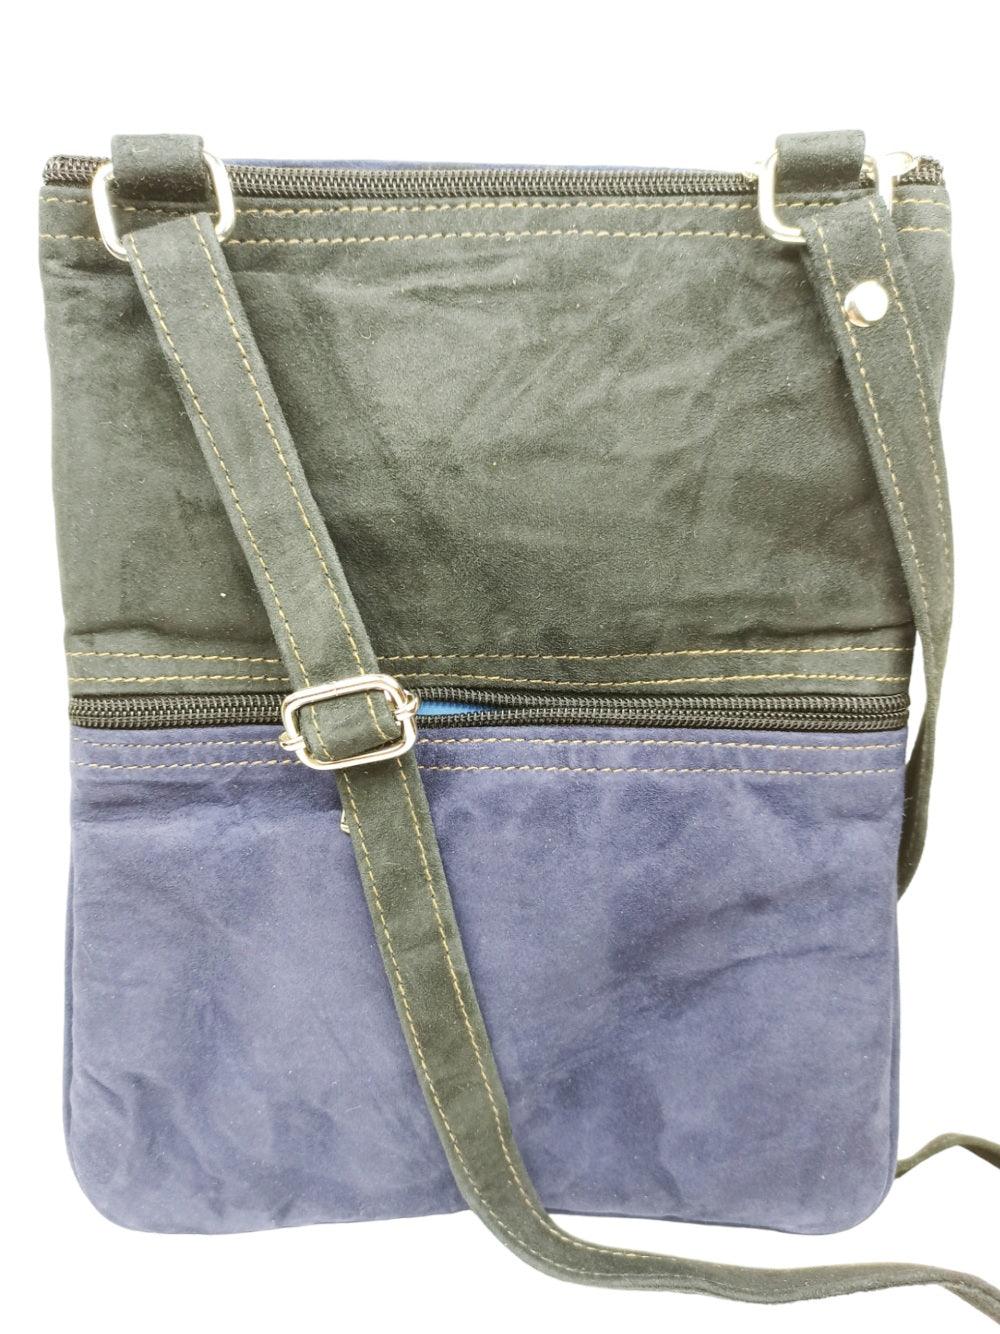 Suede Leather Sling Bag | Embroidery 5 Zipper | Sling Bag For Girls - ZANSKAR ARTS